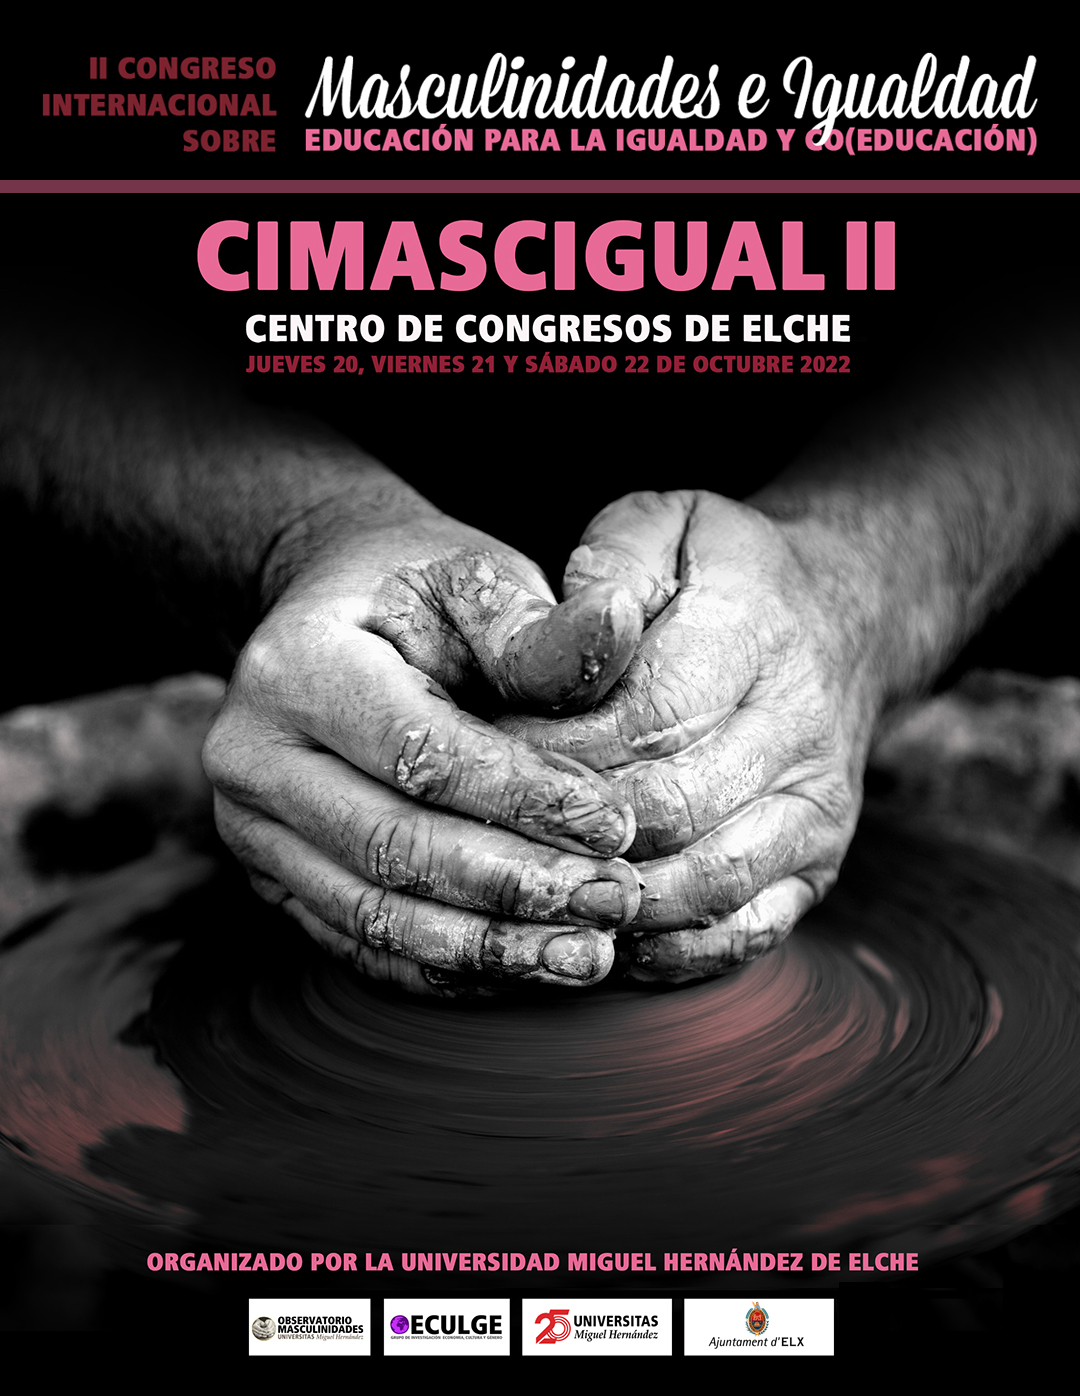 Cartel Cimasigual II Centro de congresos de elche Jueves 20, viernes 21 y Sábado 22 de octubre 2022 Organizado por la universidad Miguel Hernández de elche.